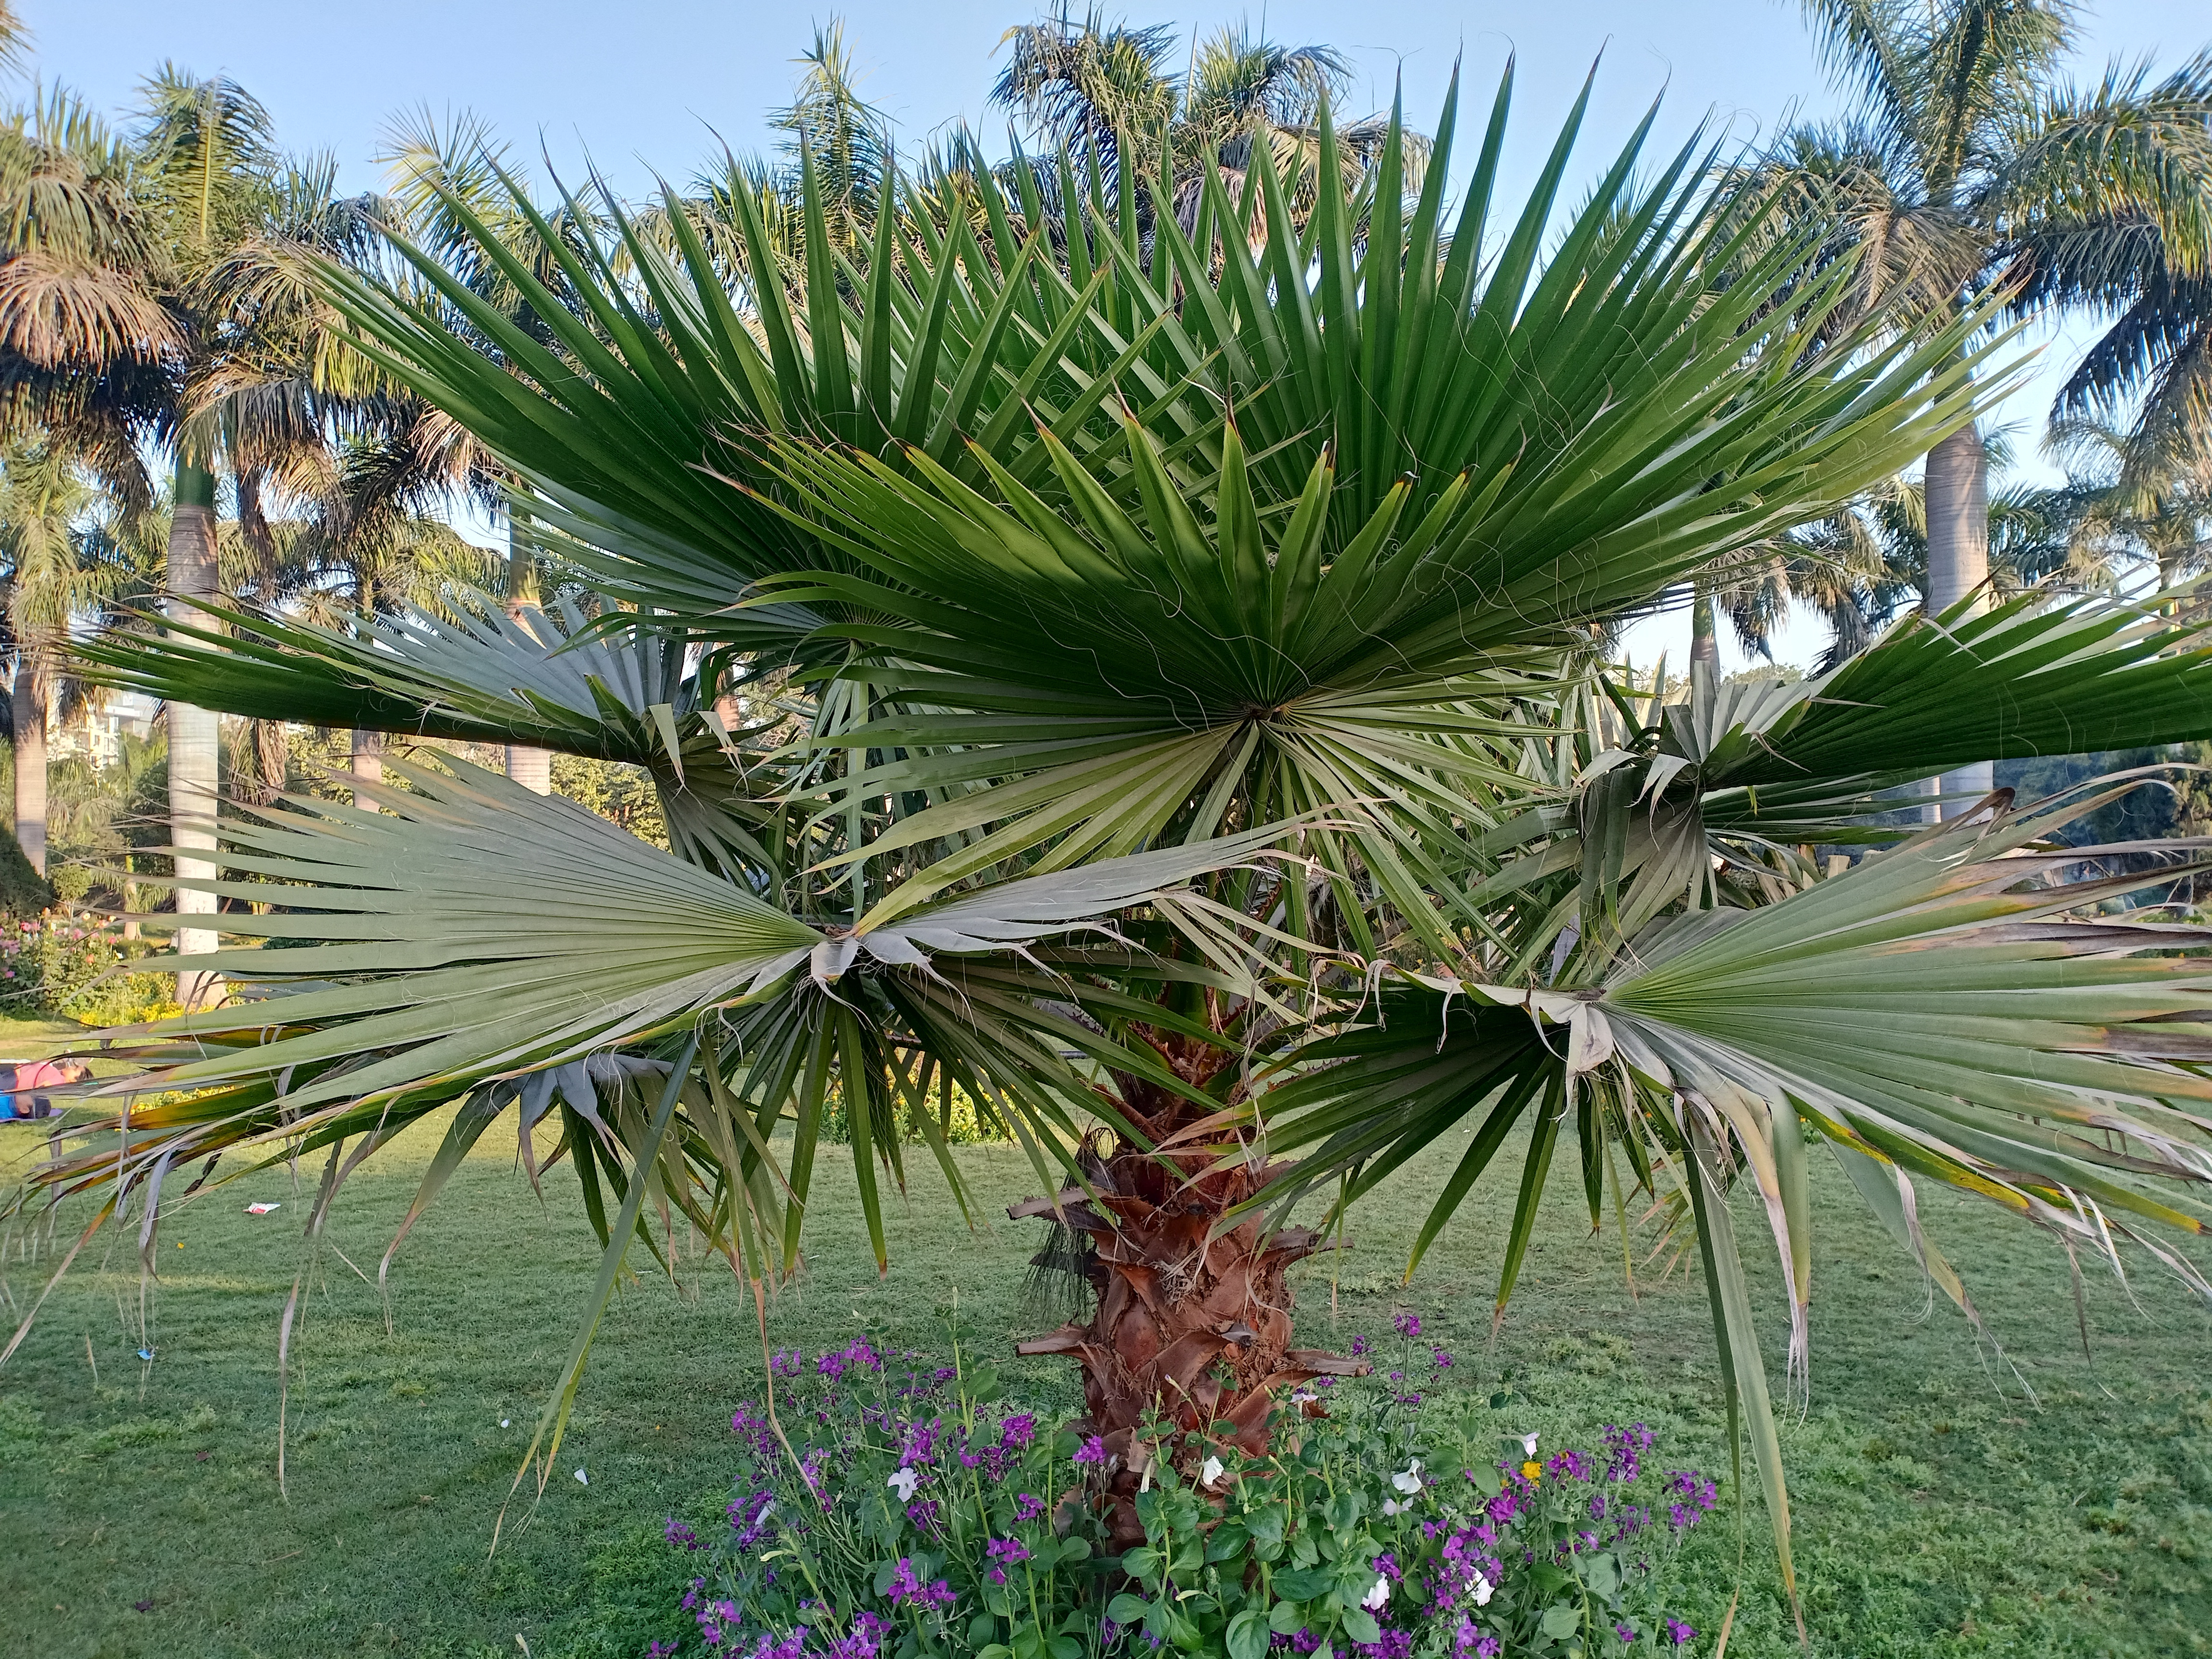 Les Washingtonia robusta sont appréciés en plantation d’alignement pour leurs silhouettes longilignes, leurs troncs chamarrés couleur caramel et leur facilité de culture. Copyright (c) 2021 Vipul1989/Shutterstock.